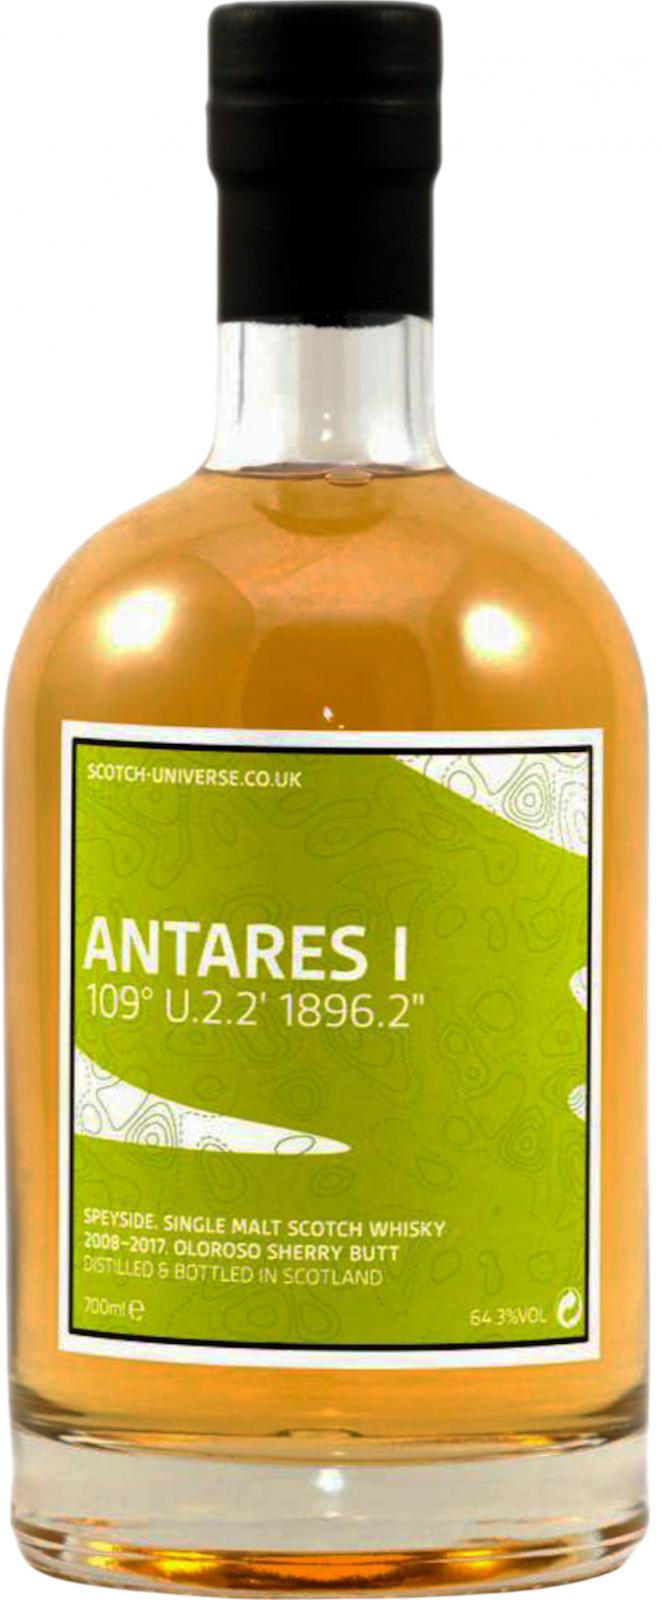 Scotch Universe Antares I - 109° U.2.2' 1896.2''